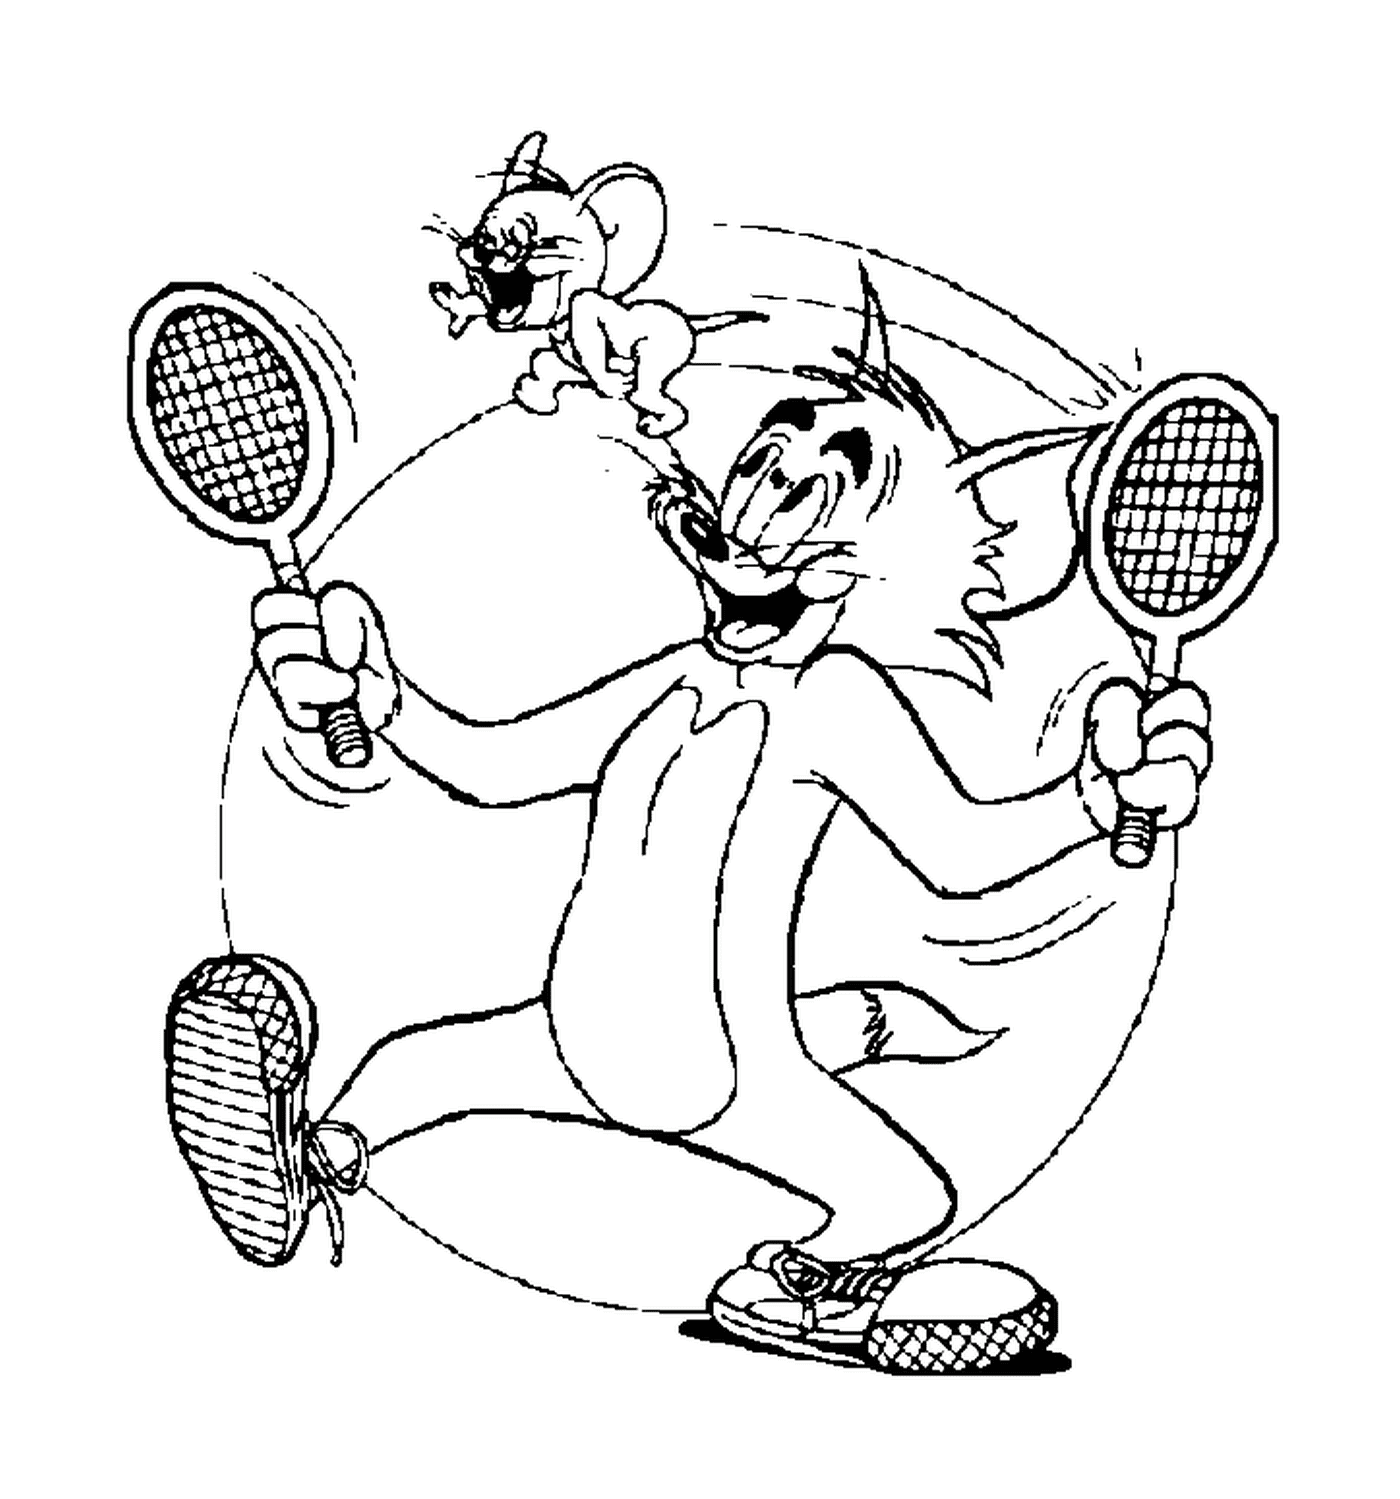  Tom e Jerry giocano a tennis 